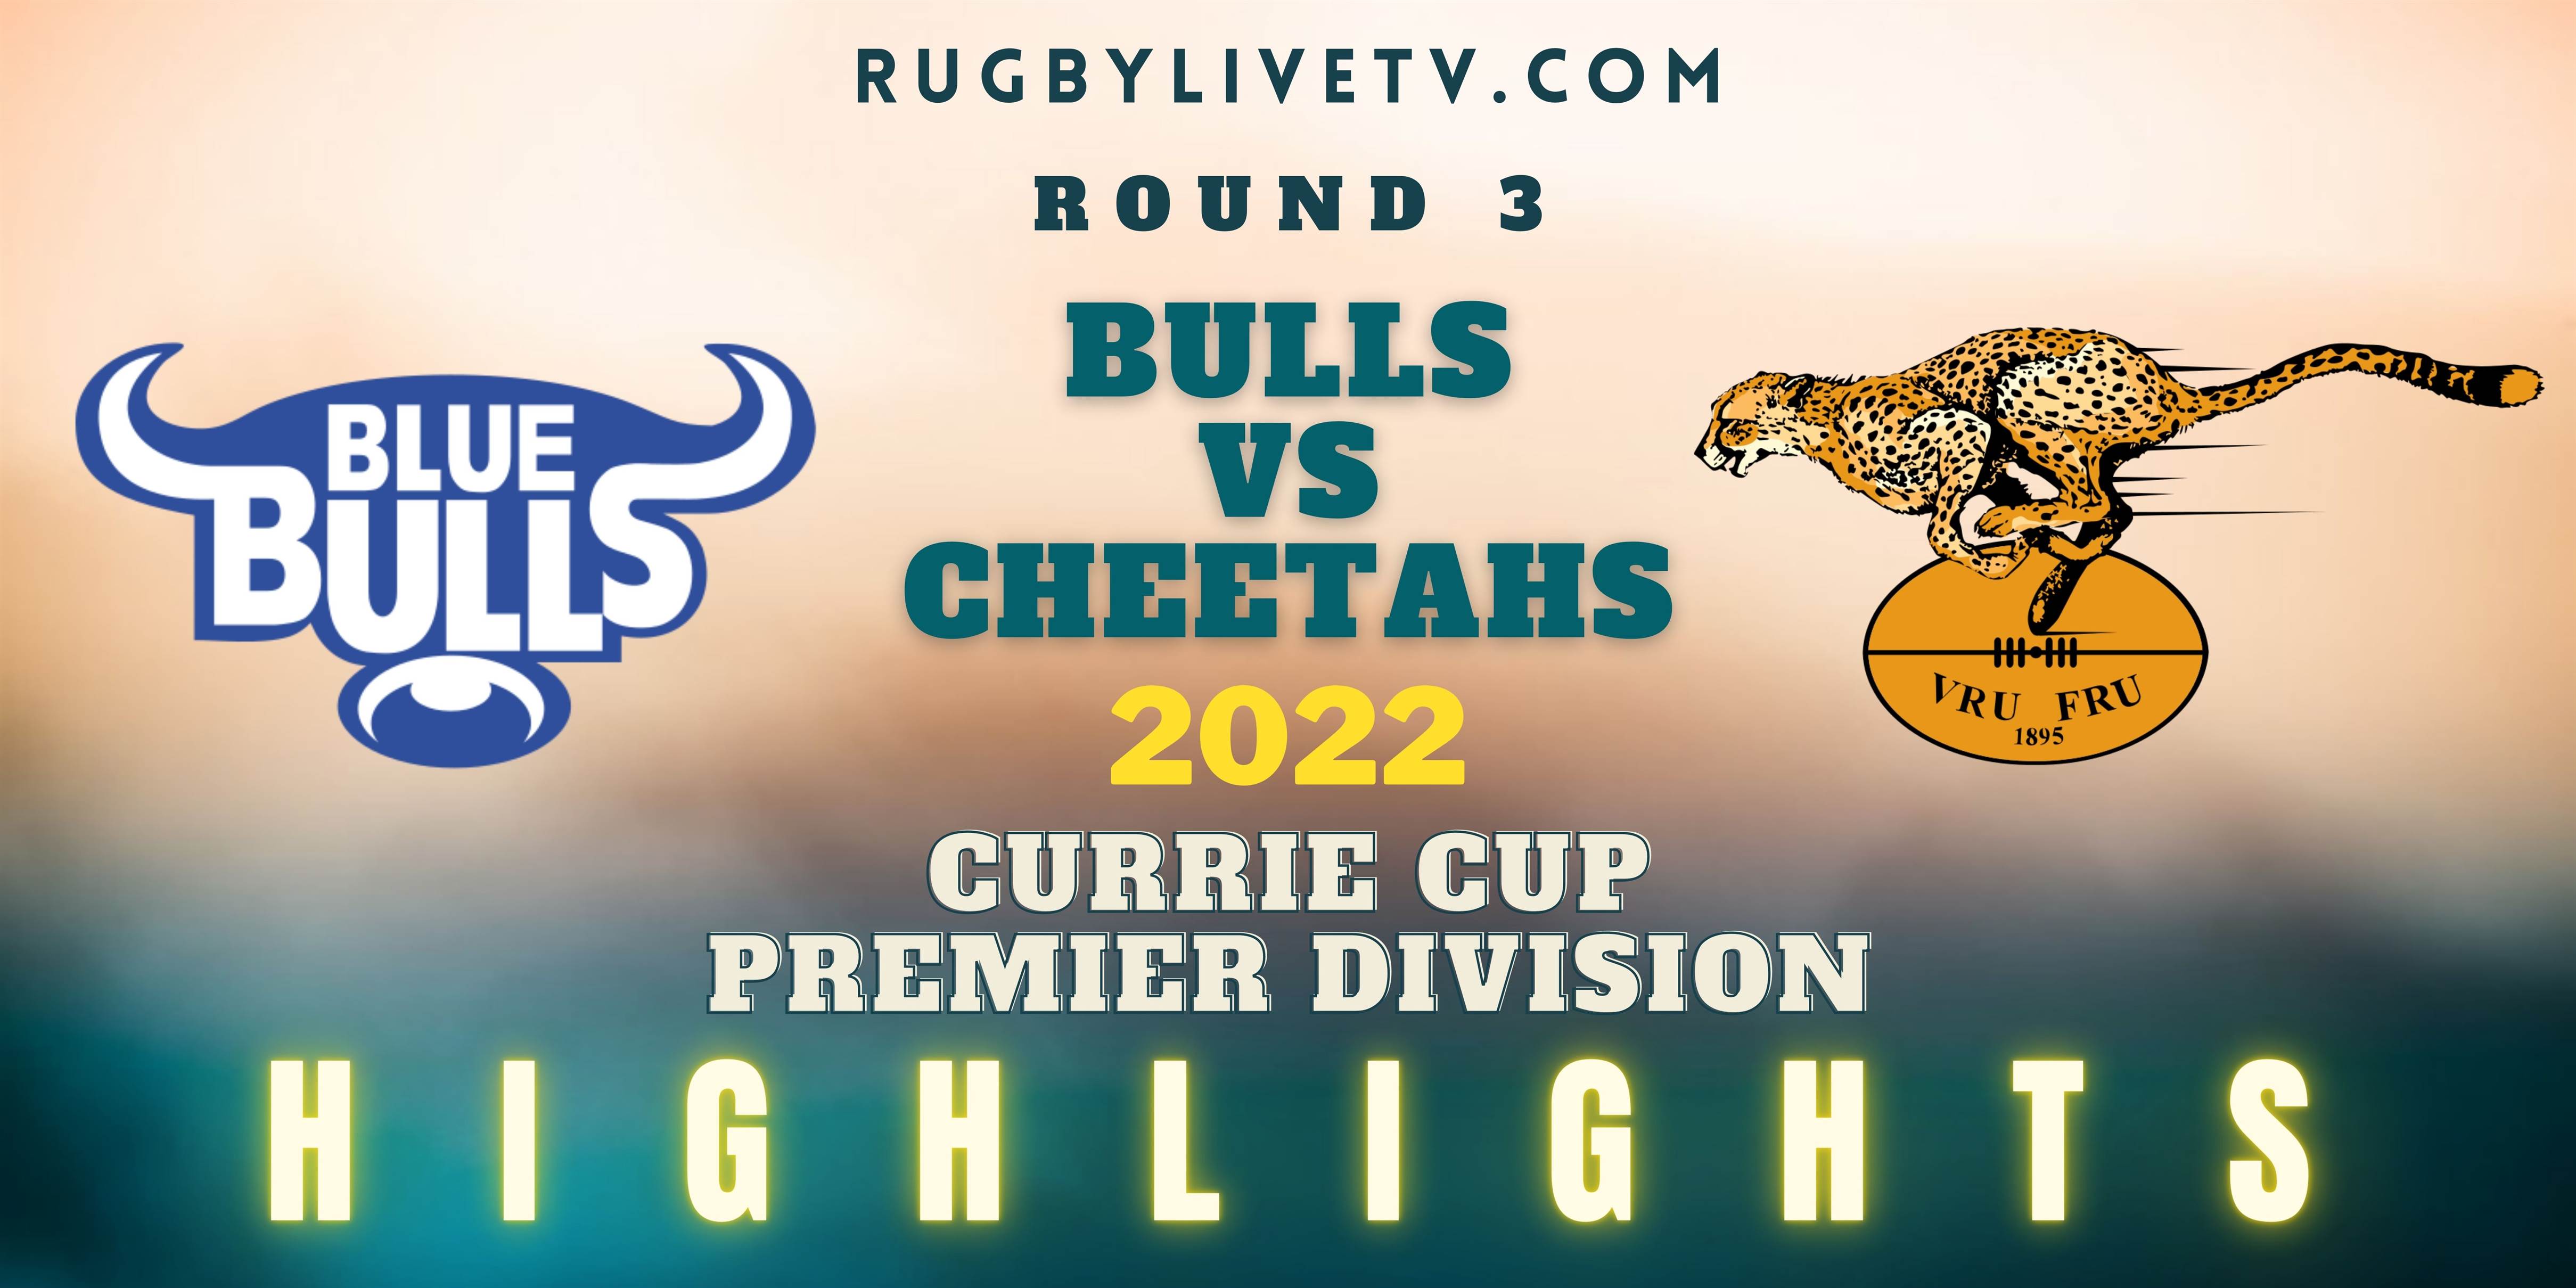 Bulls Vs Cheetahs Currie Cup Highlights 2022 Rd 3